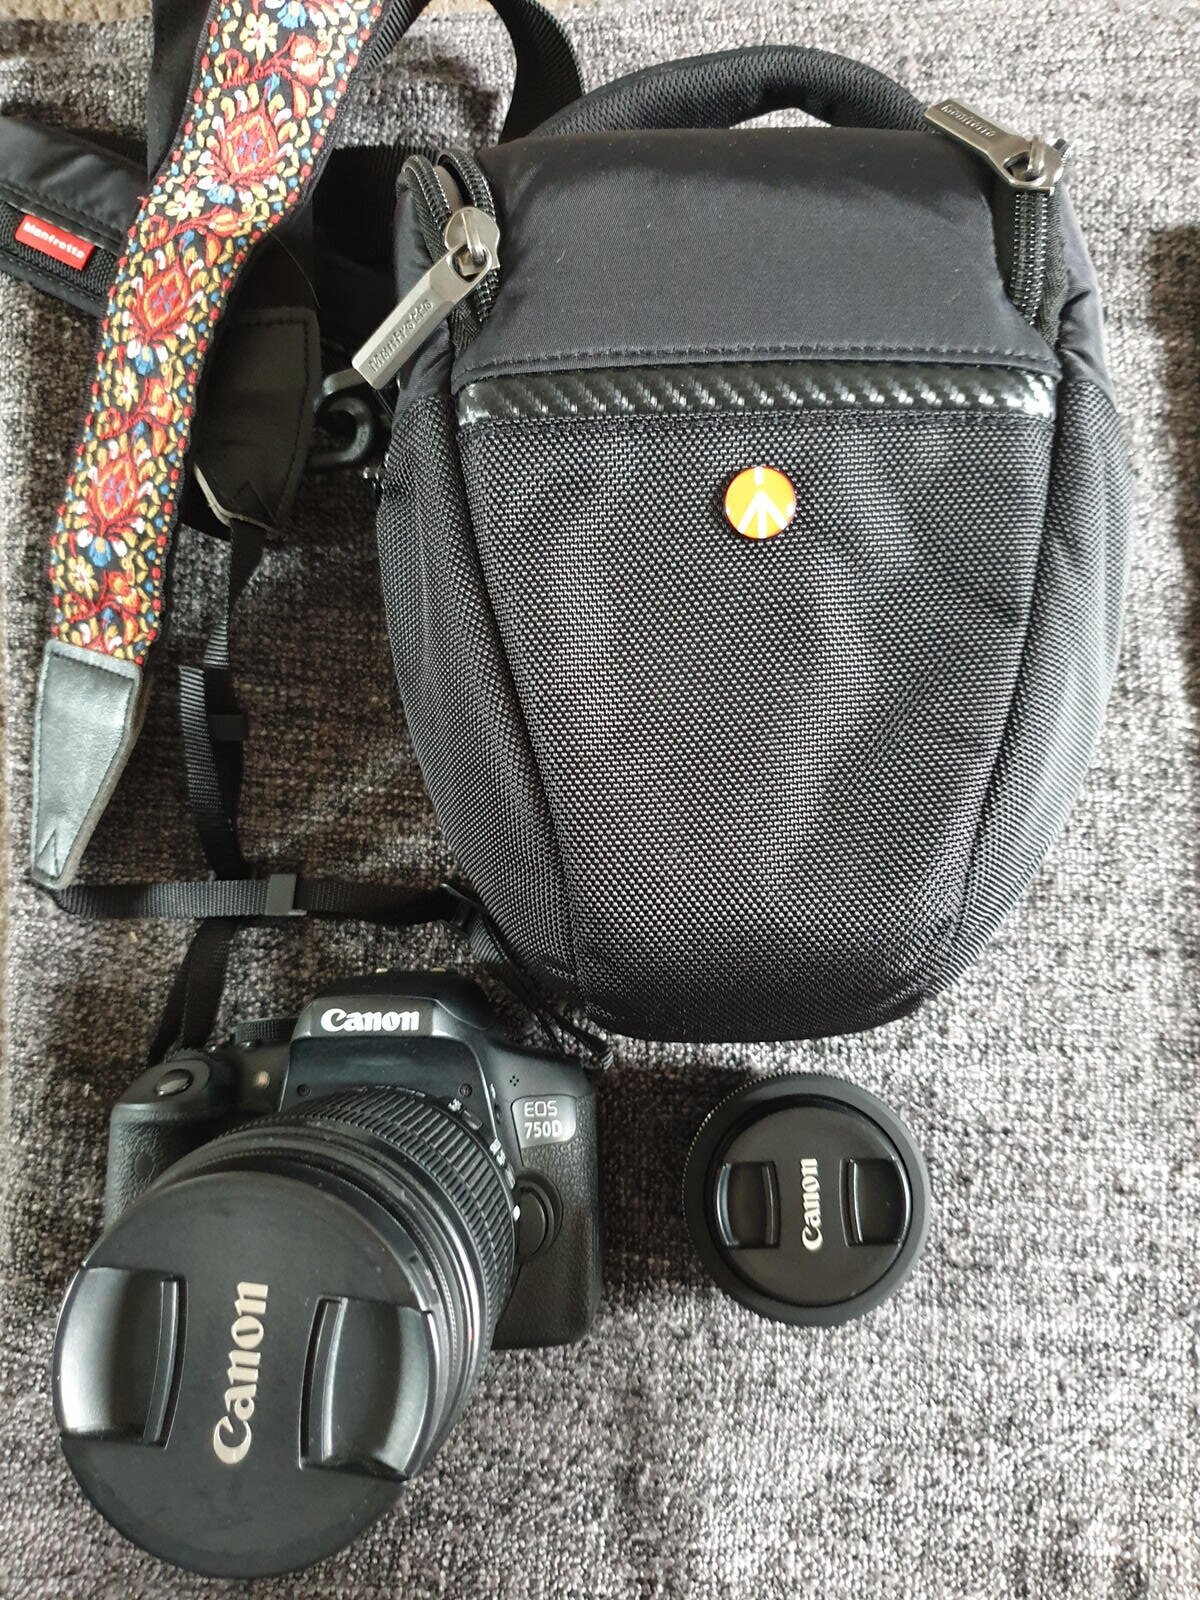 My camera bag and camera